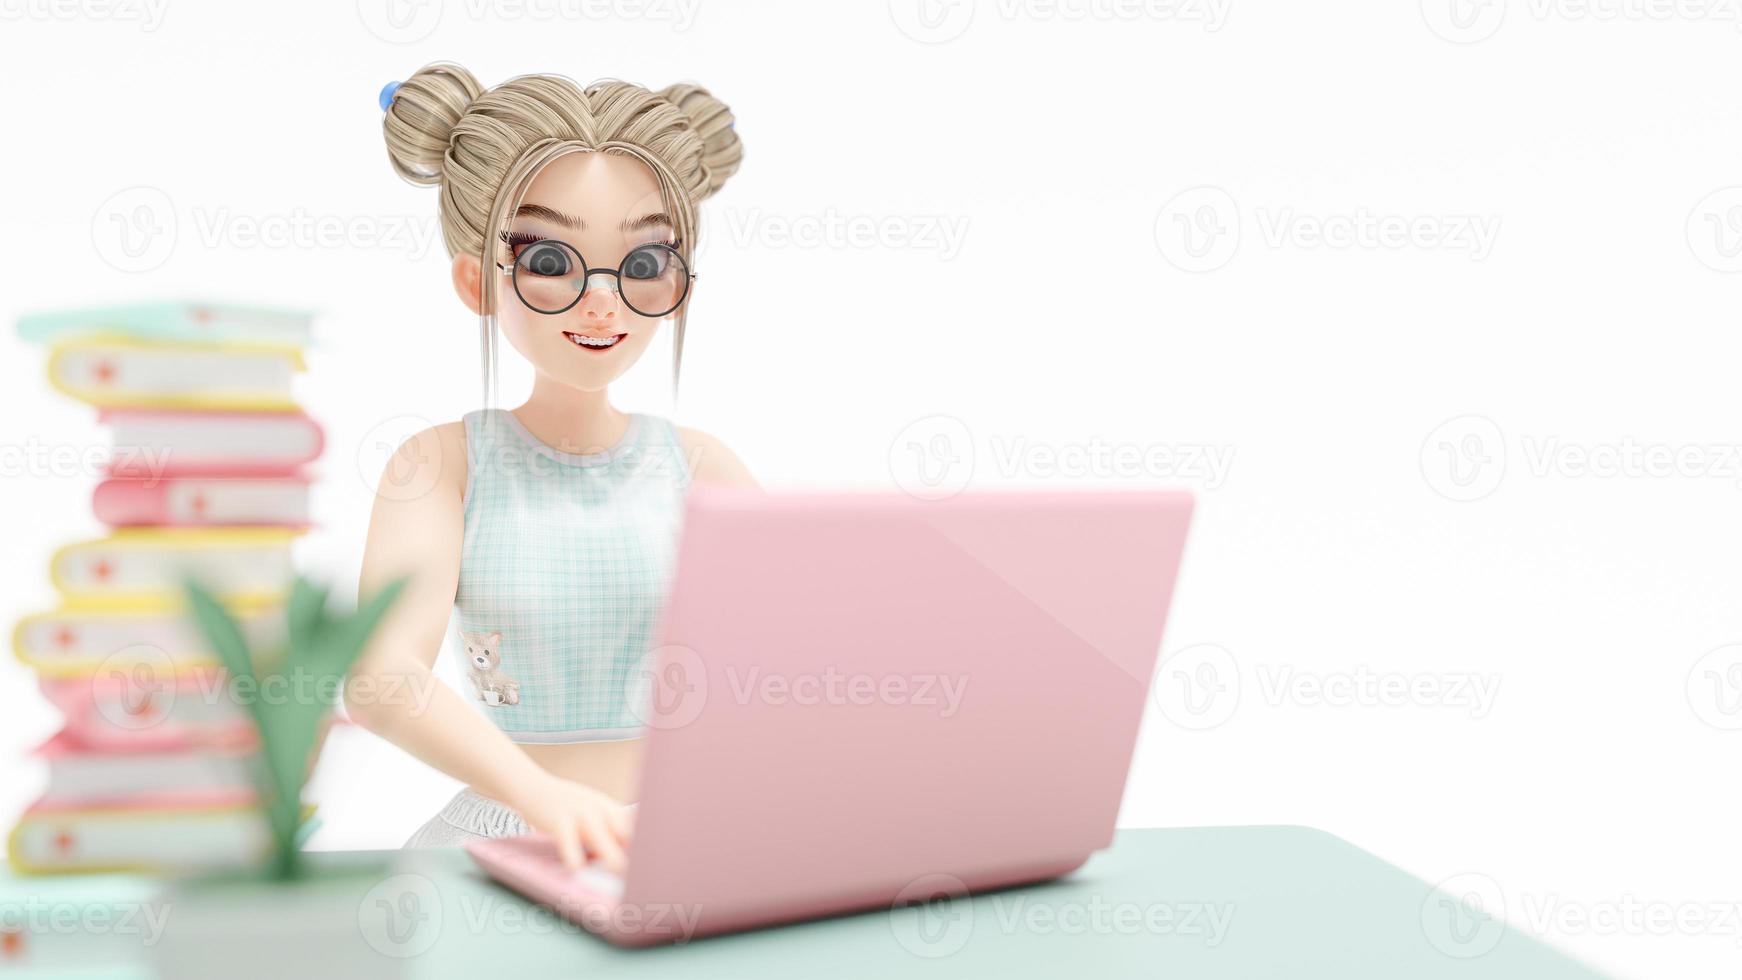 mujer joven feliz sentada en la silla. disfruta estudiando, aprendiendo e investigando información de la computadora. la computadora portátil rosa se coloca en el escritorio. personaje de dibujos animados, representación 3d foto